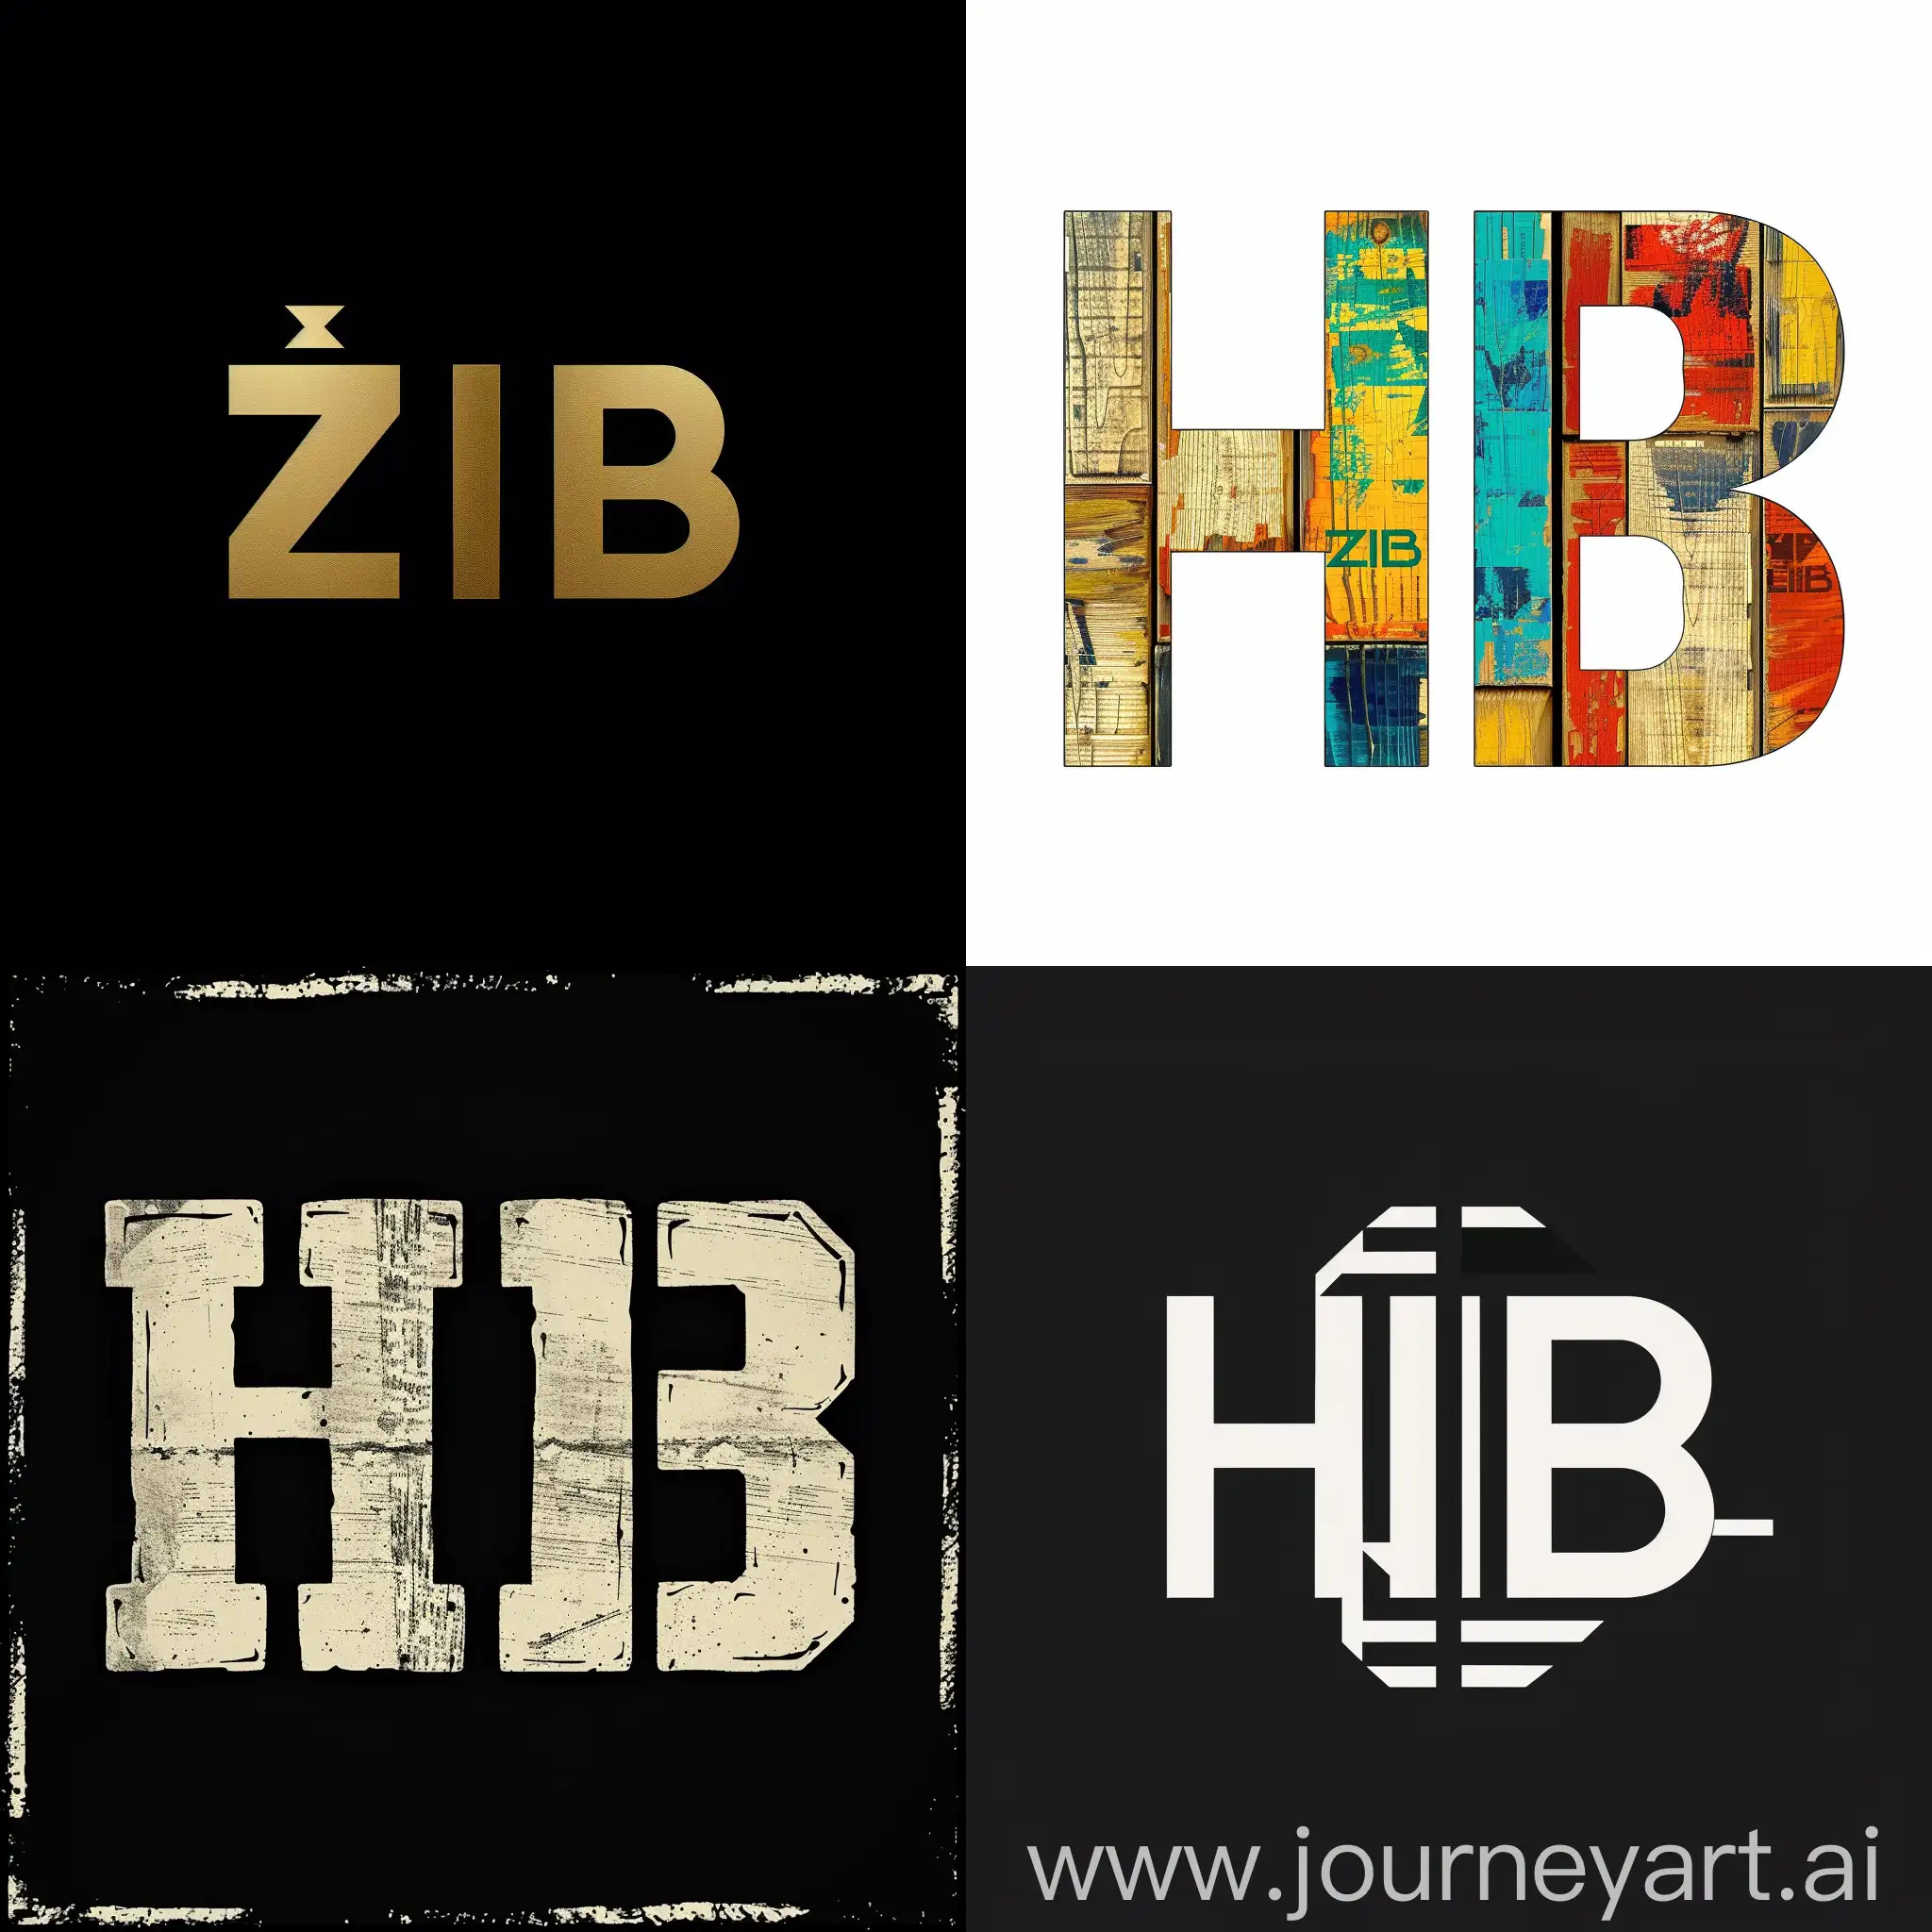 Erstelle mir ein adaptiertes Zeit im Bild (ZIB) Logo mit den Buchstaben HIB